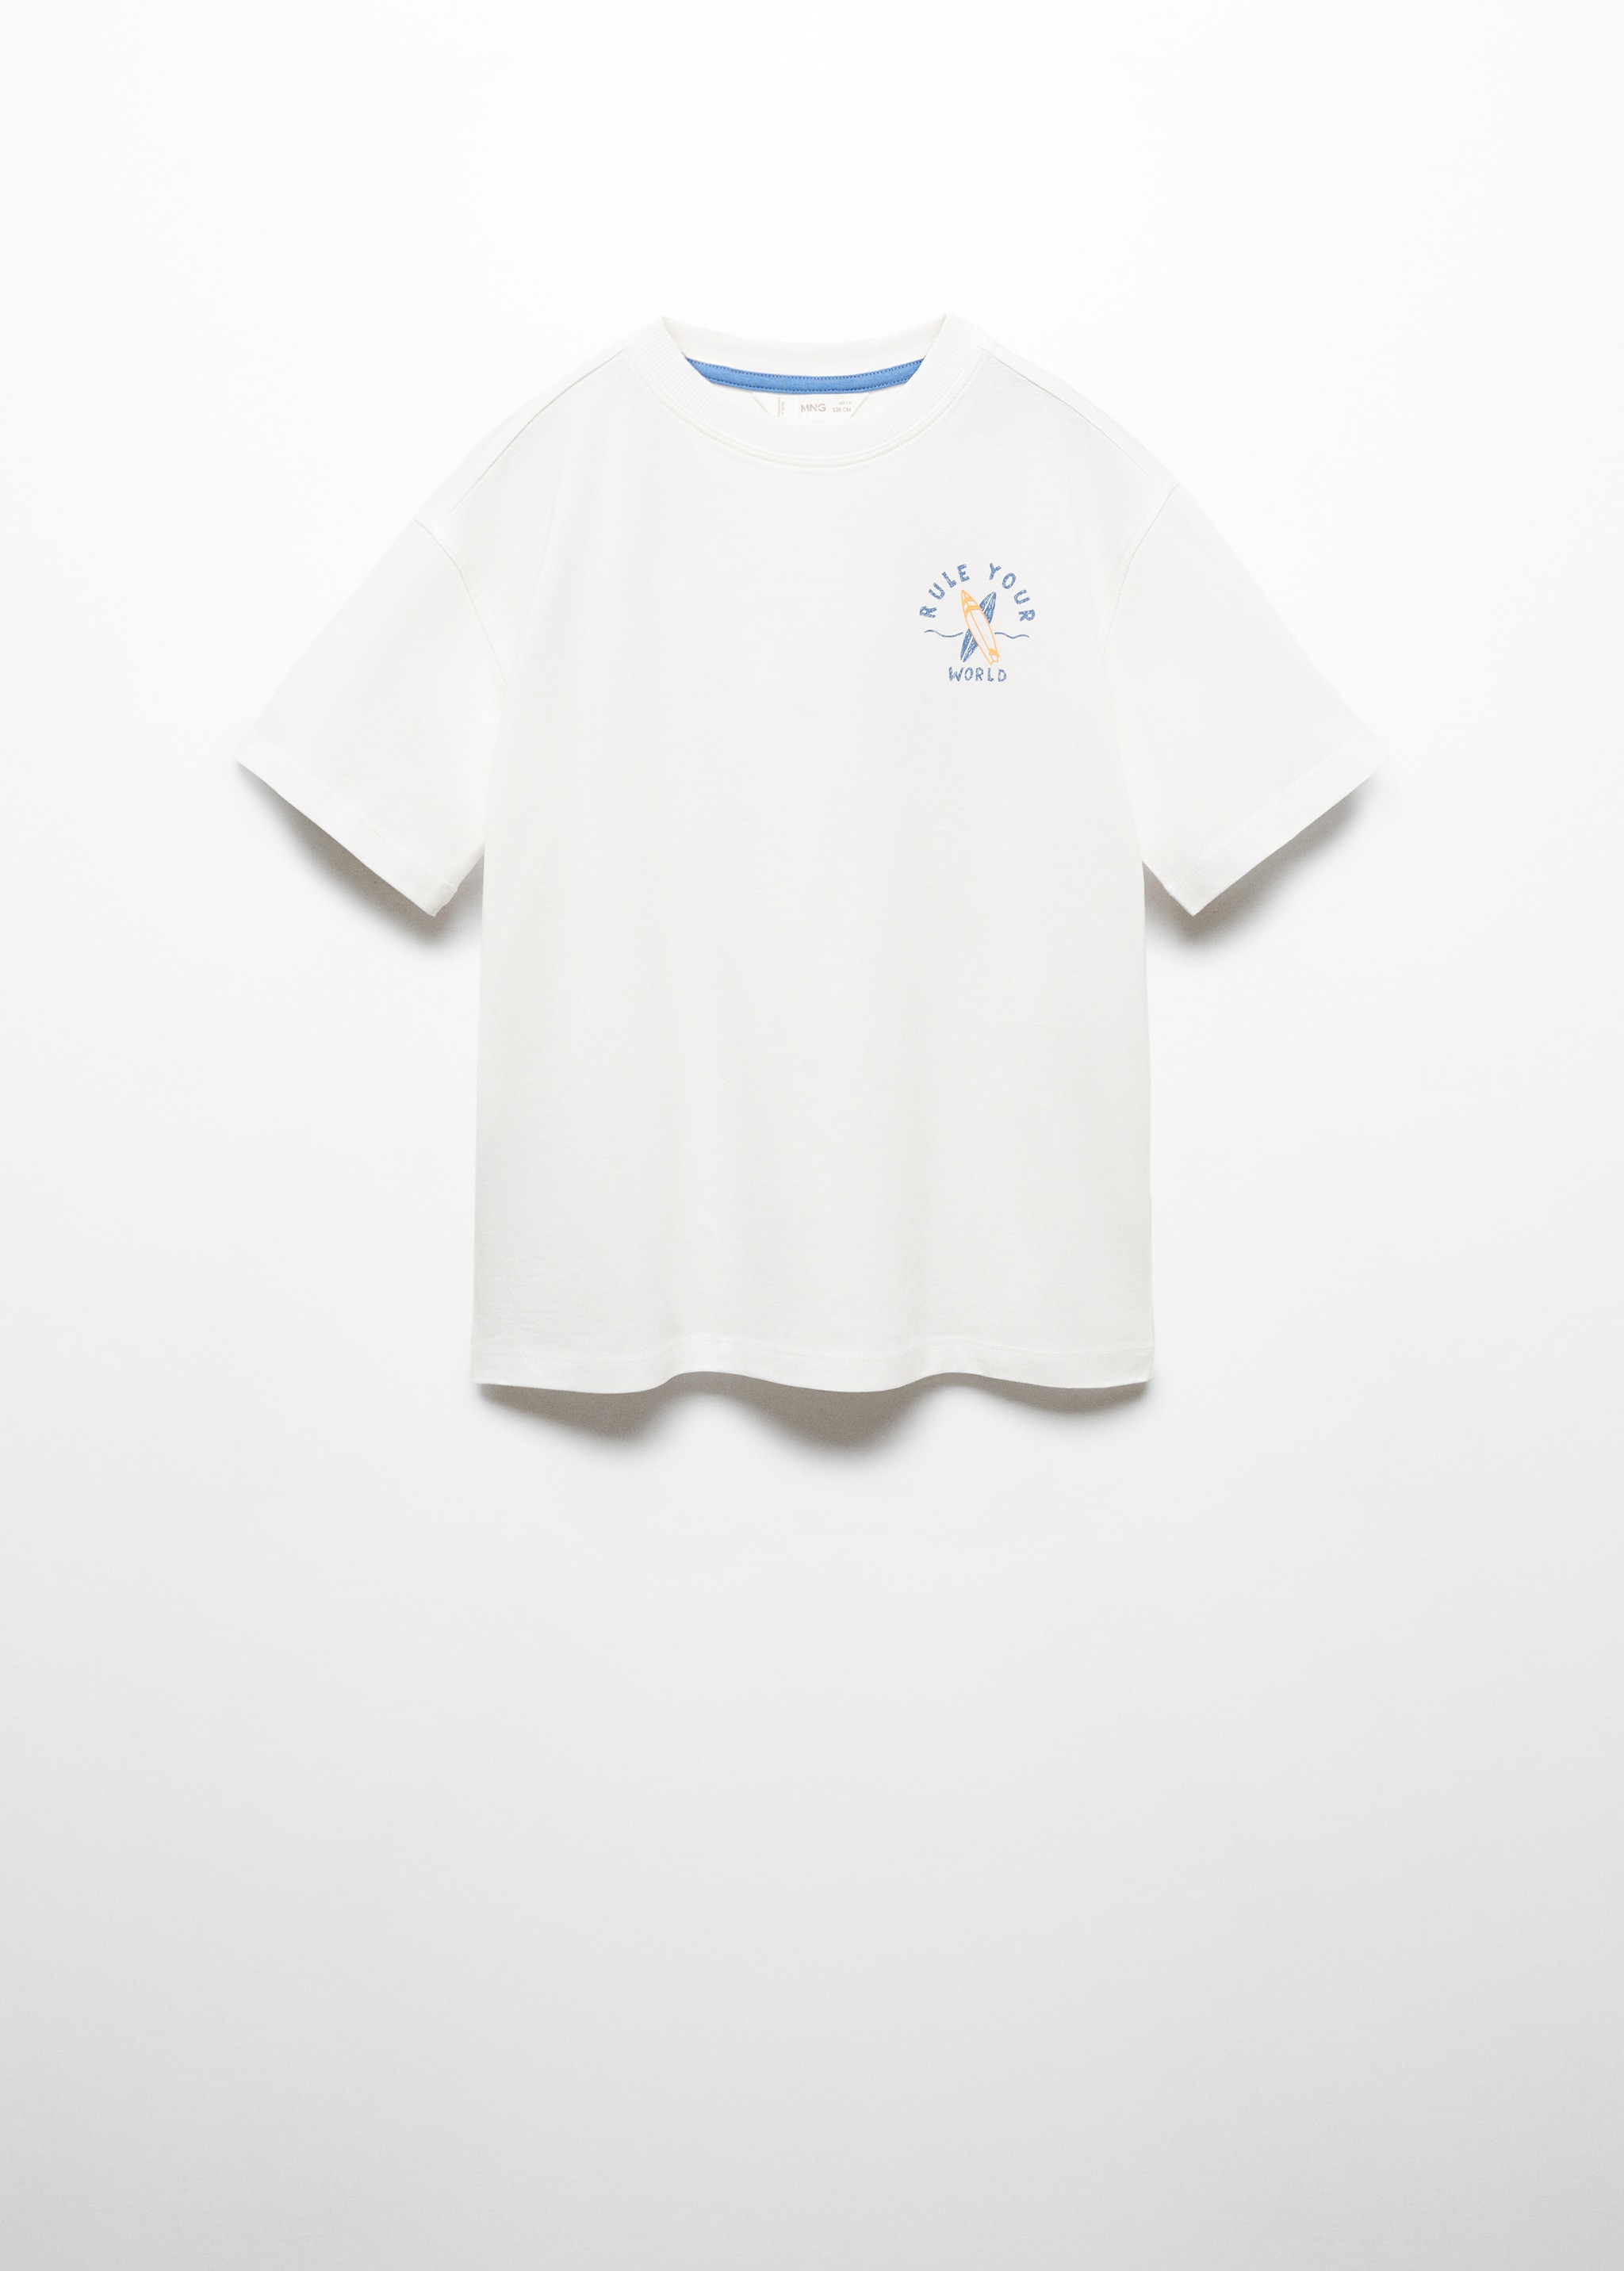 Camiseta algodón estampado - Artículo sin modelo